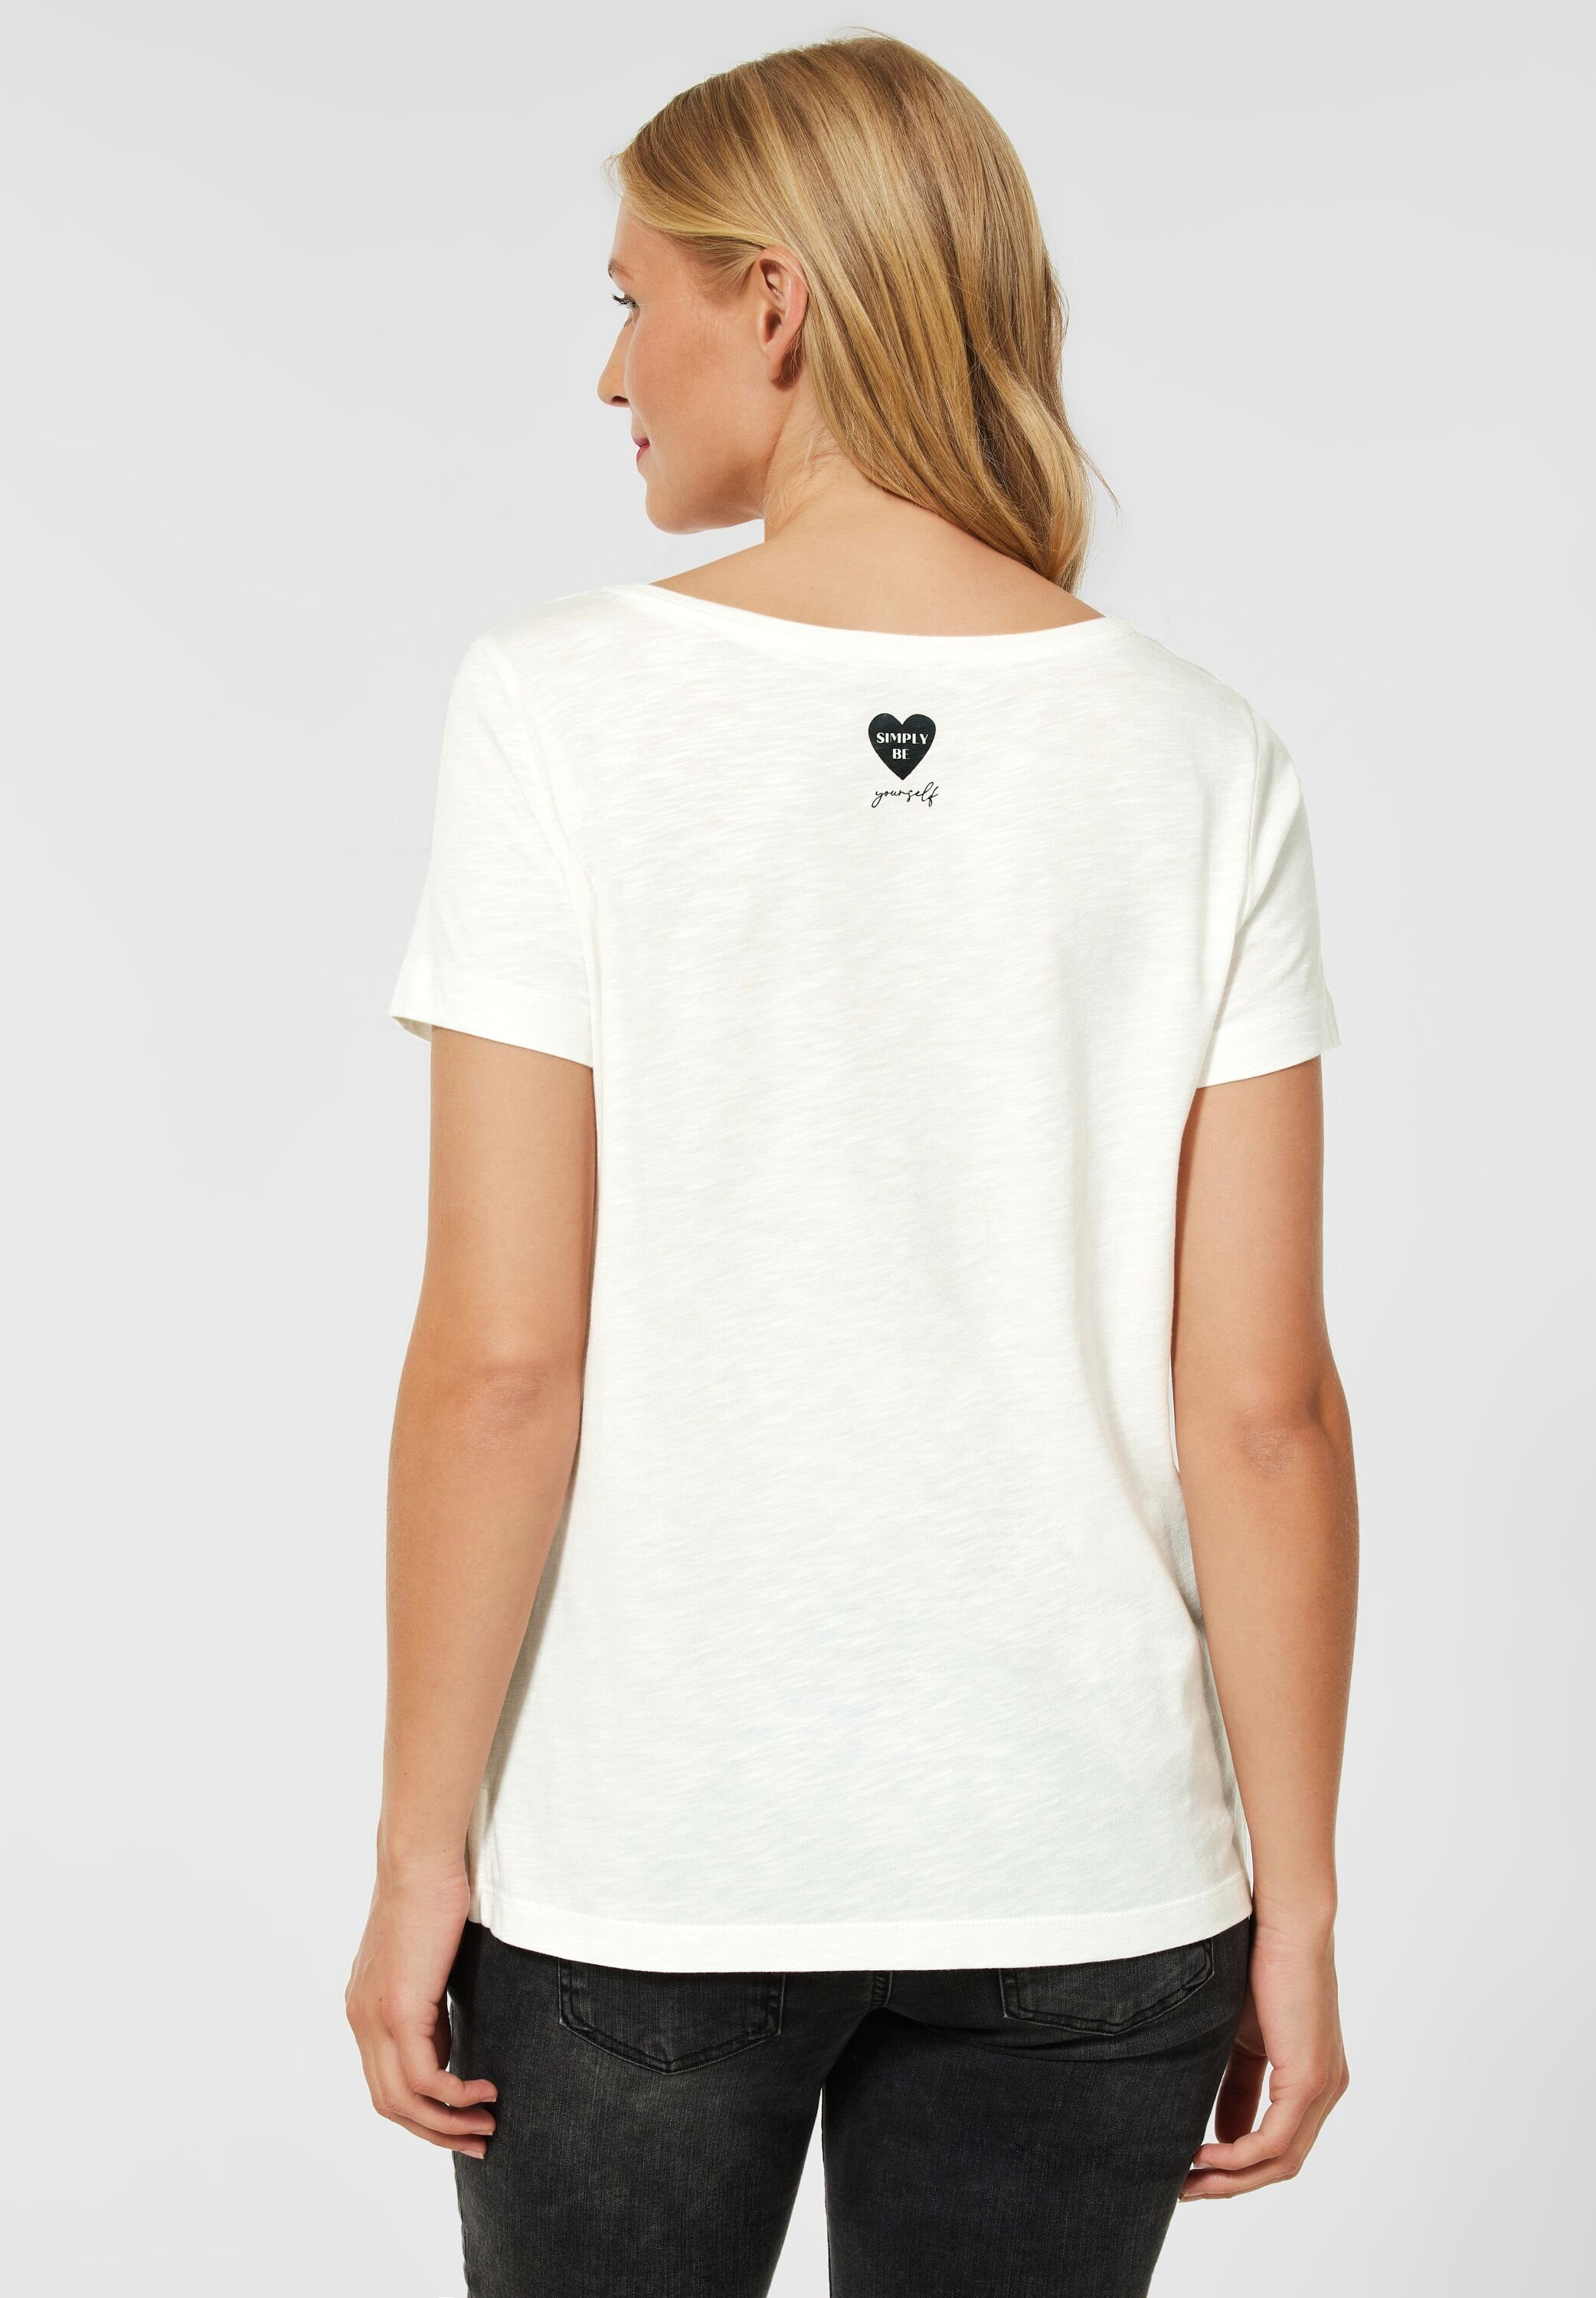 cm, Größe T Partprint ONE ca.: cm, 63 bei Nicht cm M White T-Shirt Shirt (1-tlg) Länge Vorhanden, 102 Off in One 107 Brust STREET Street Maße Saumweite mit